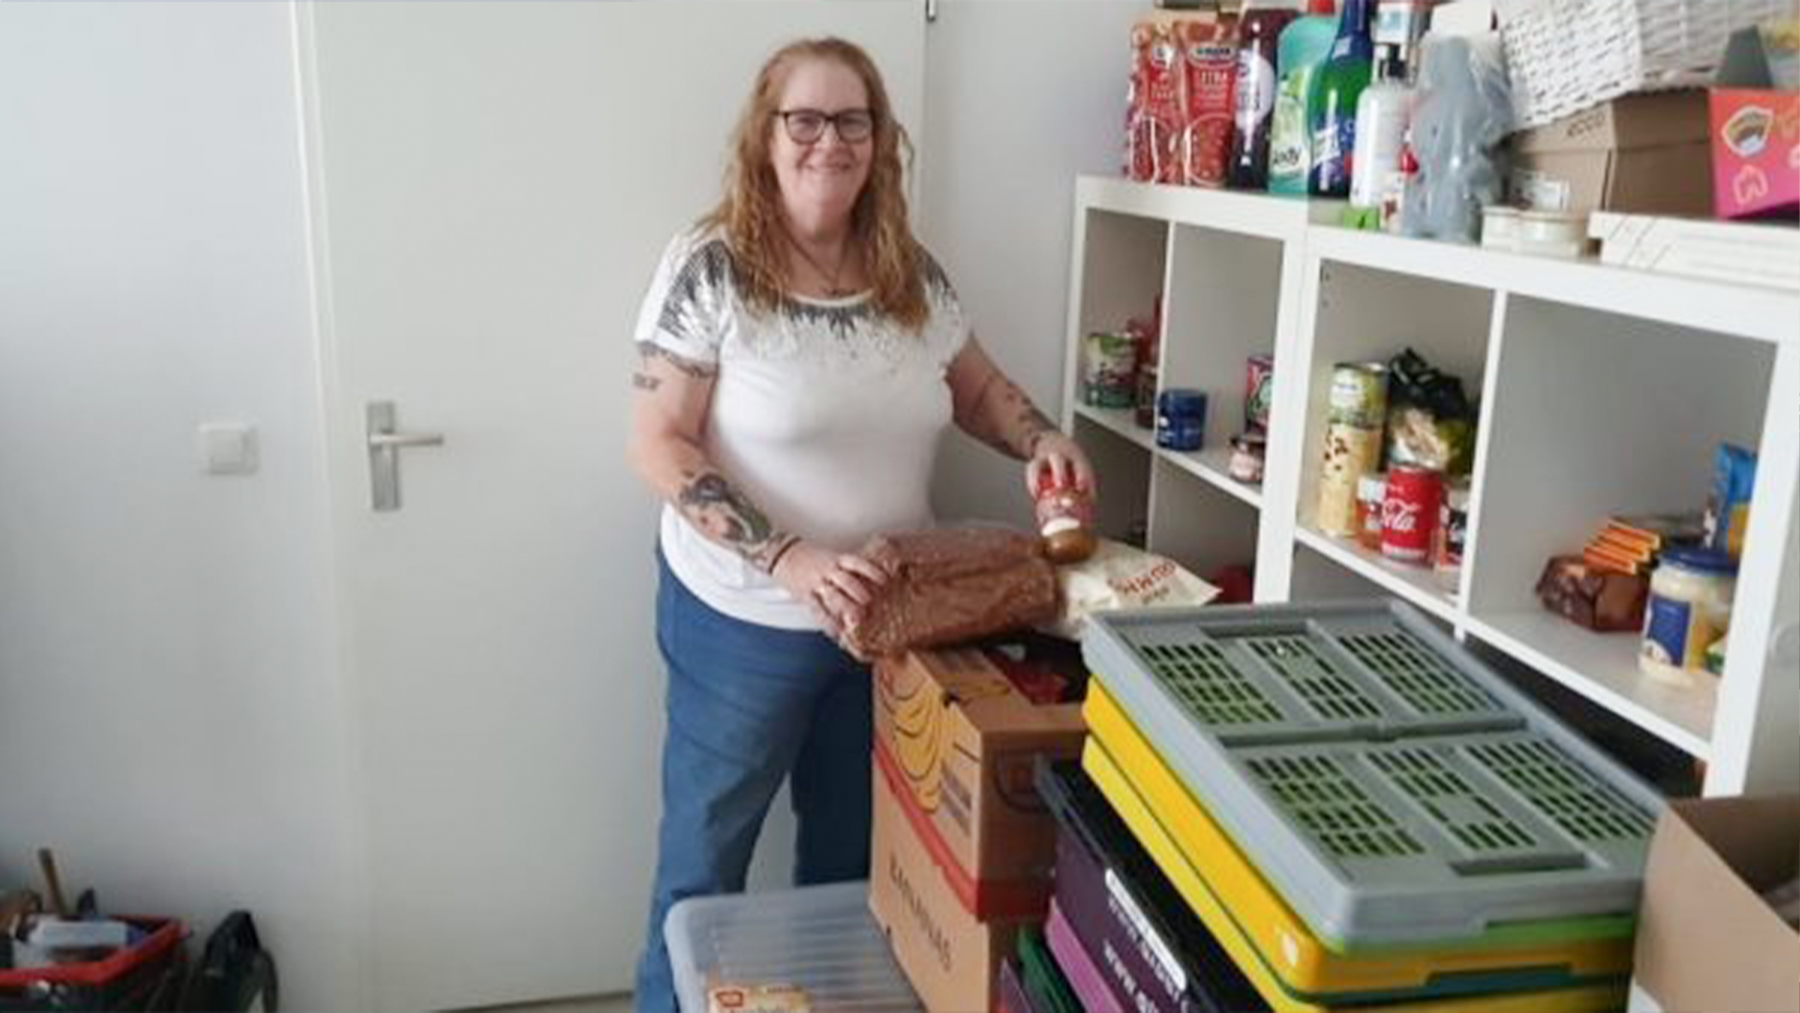 Els runt vanuit huis haar eigen voedselbank: 'Bij mij hebben gezinnen altijd wat'